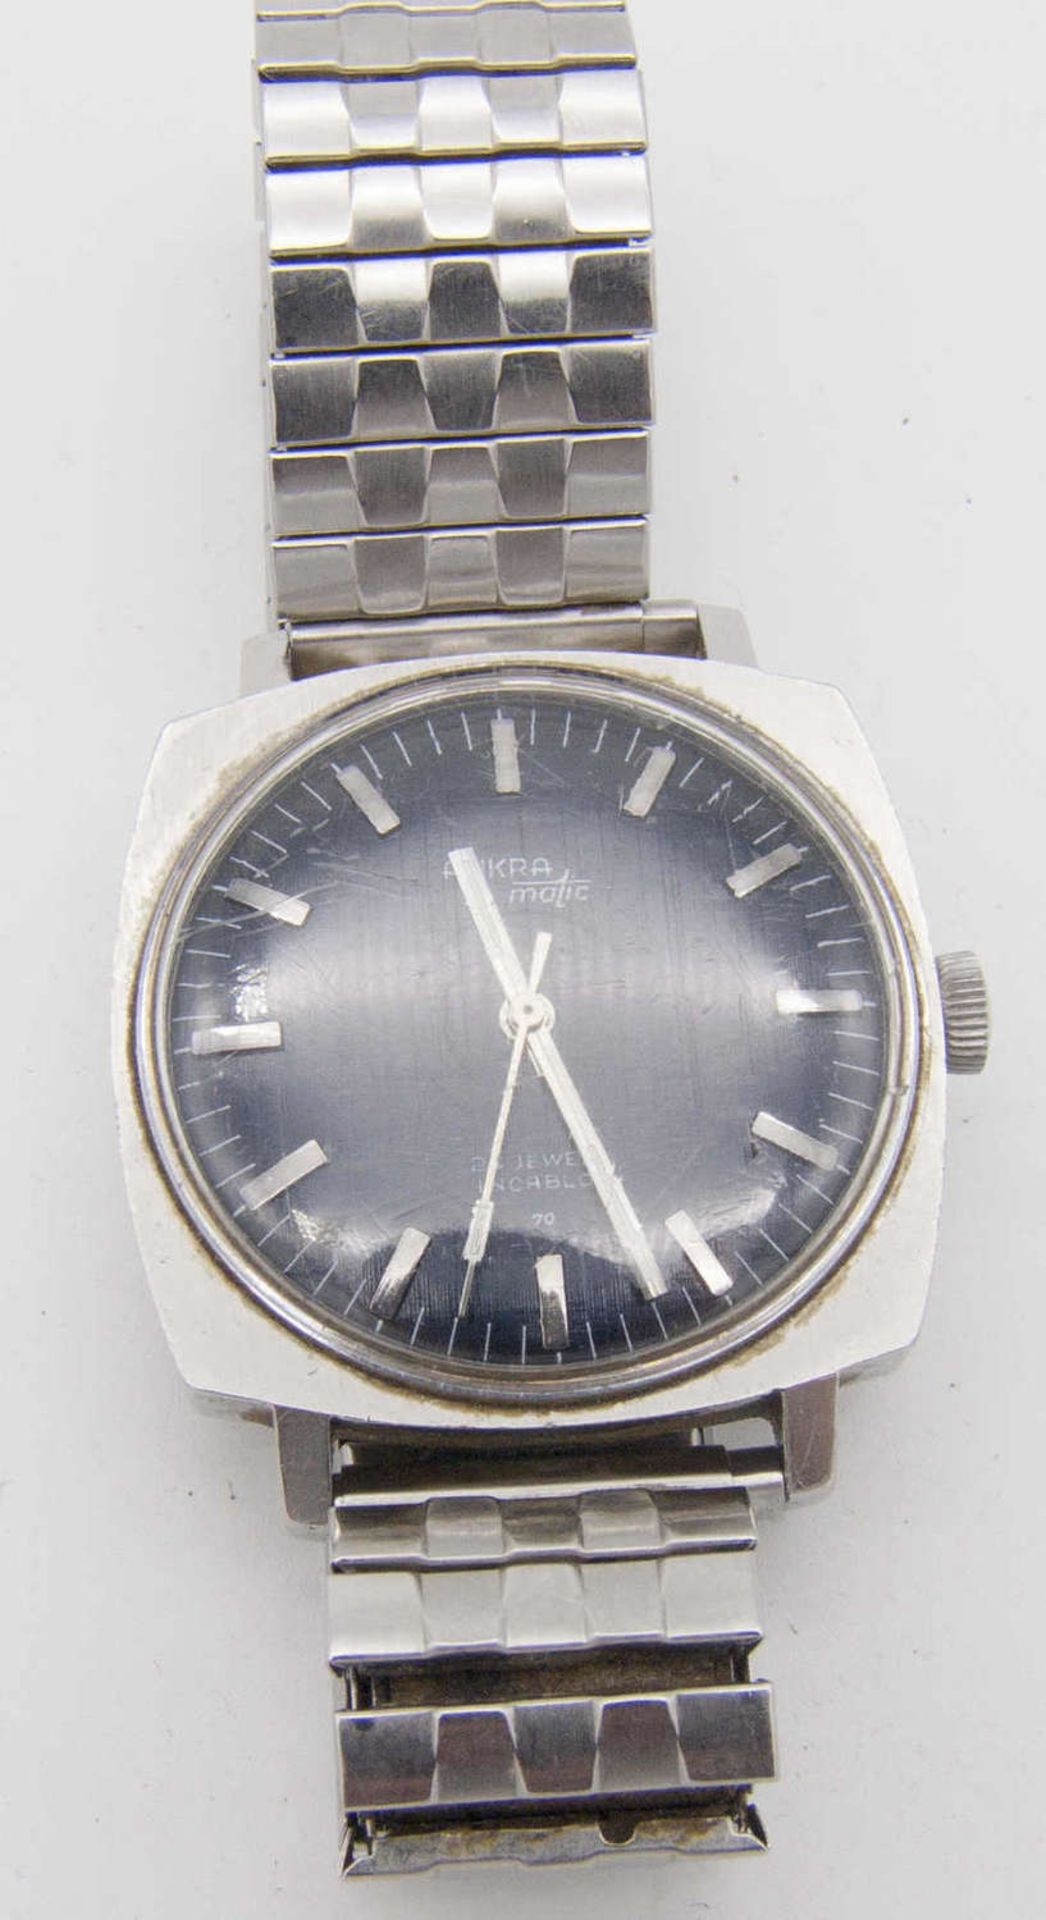 Ankra matic Herren - Armbanduhr. Ca. 70er Jahre. Mechanisch. Mit Flexarmband. Die Uhr läuft an.Ankra